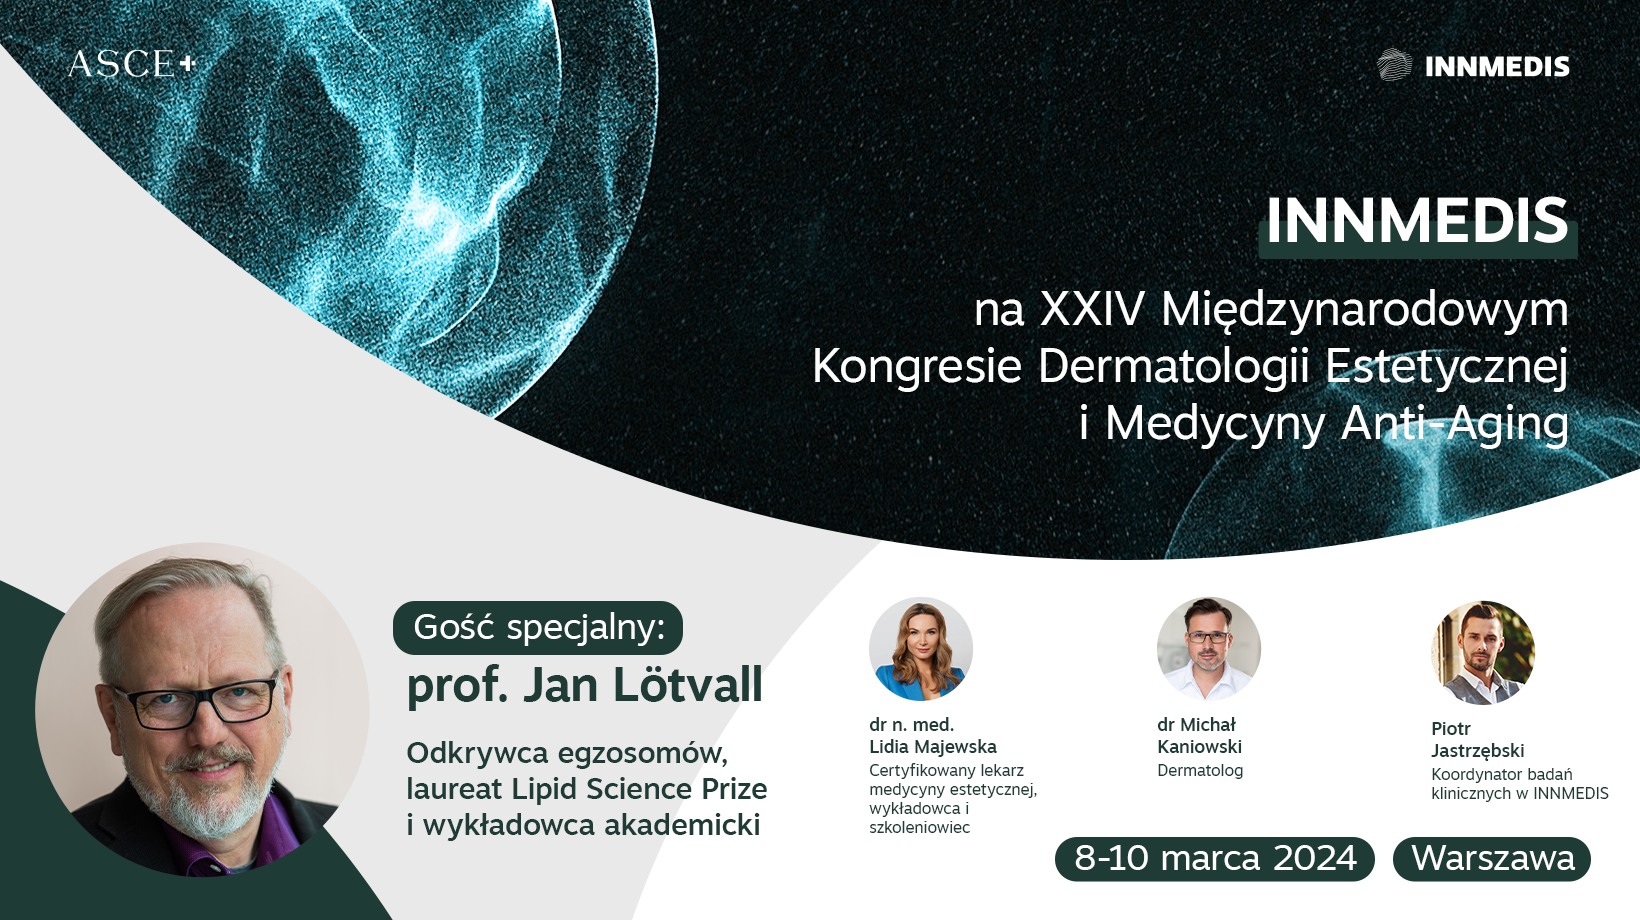 INNMEDIS na XXIV Międzynarodowy Kongres Dermatologii Estetycznej i Medycyny Anti-Aging w Warszawie